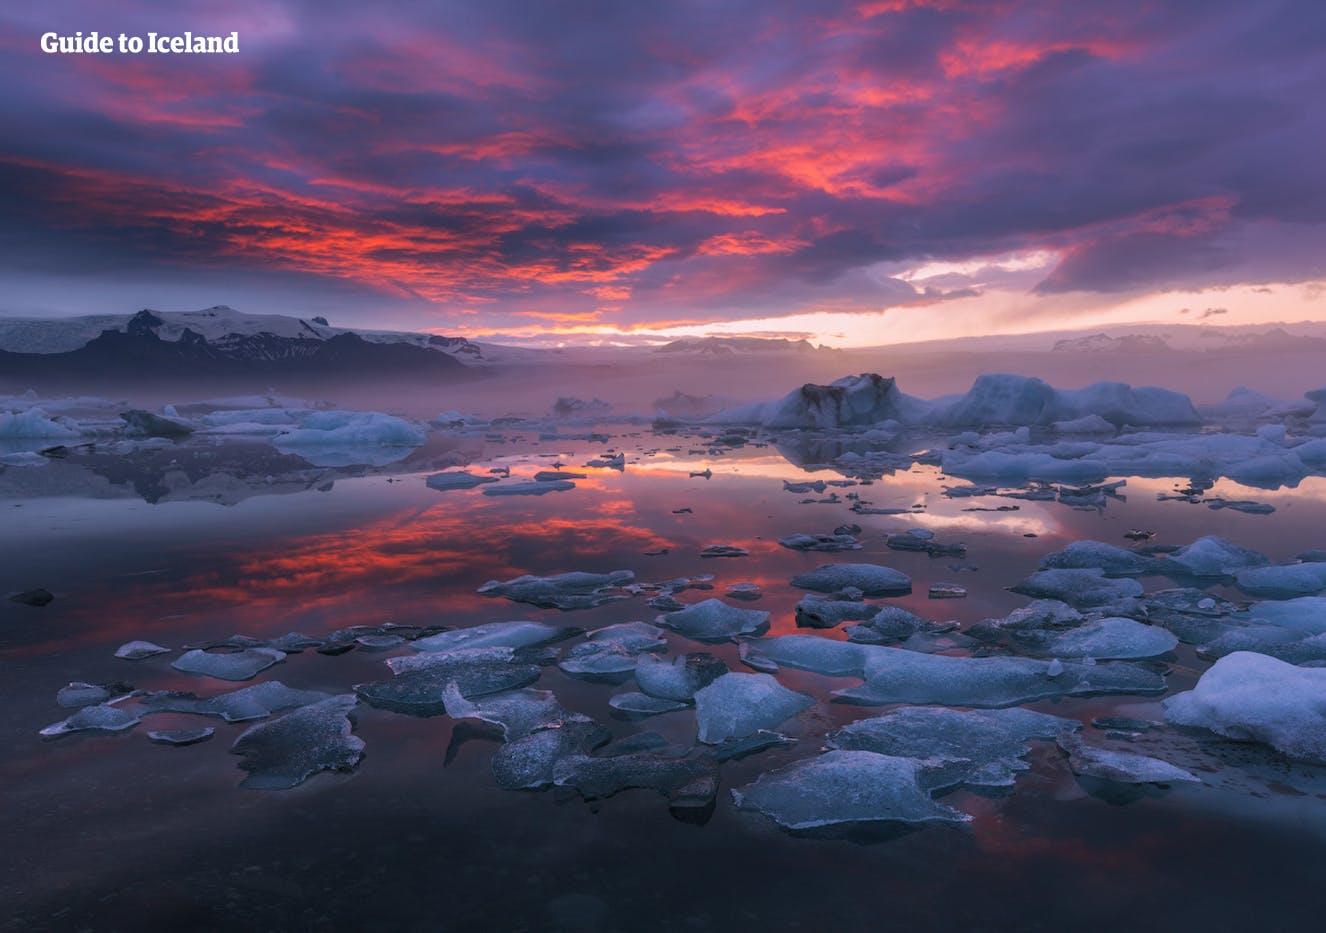 Visita la splendida laguna glaciale di Jökulsárlón e ammira gli iceberg che galleggiano sull'acqua gelata.